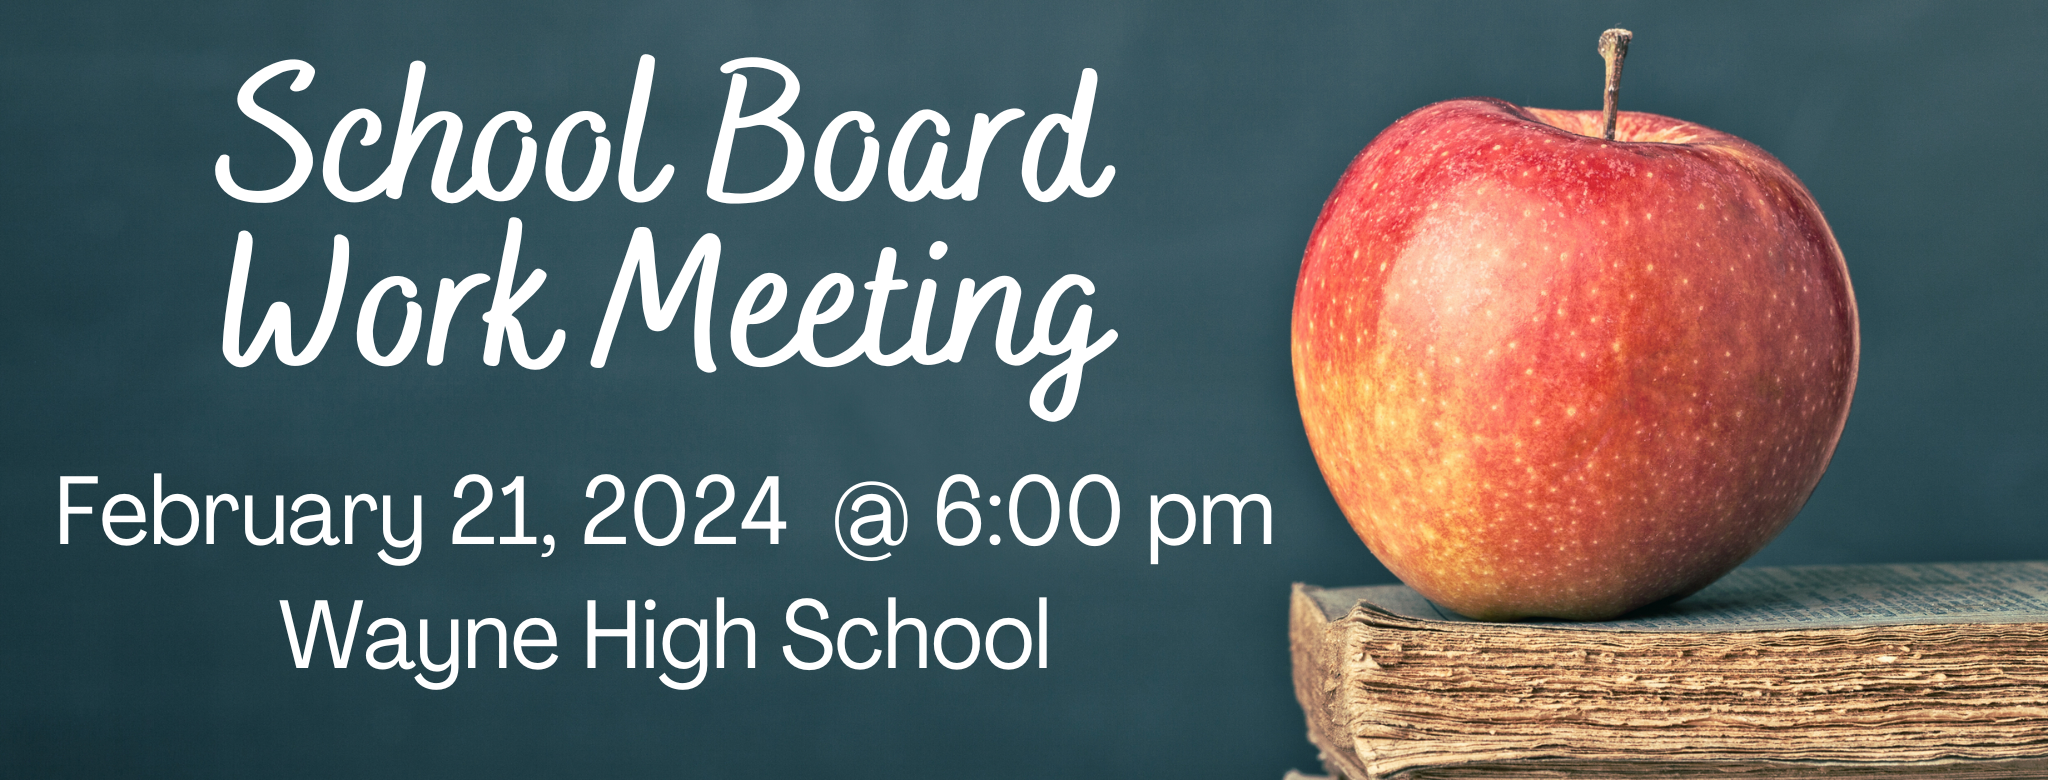 School Board Work Meeting 2 21